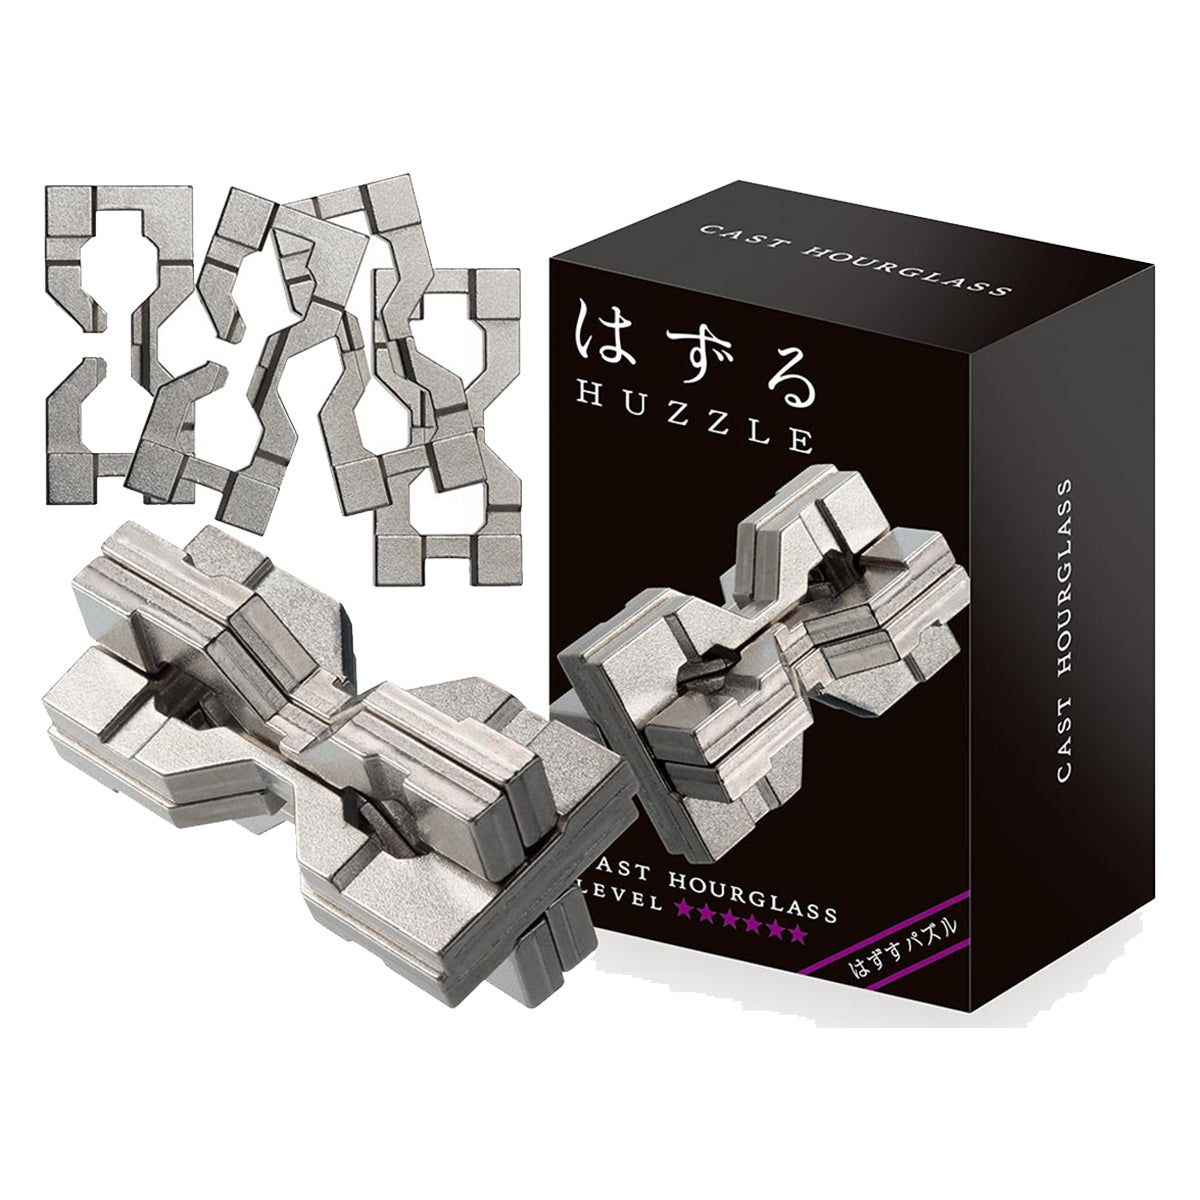 Eureka Puzzles - Huzzle Cast Hourglass